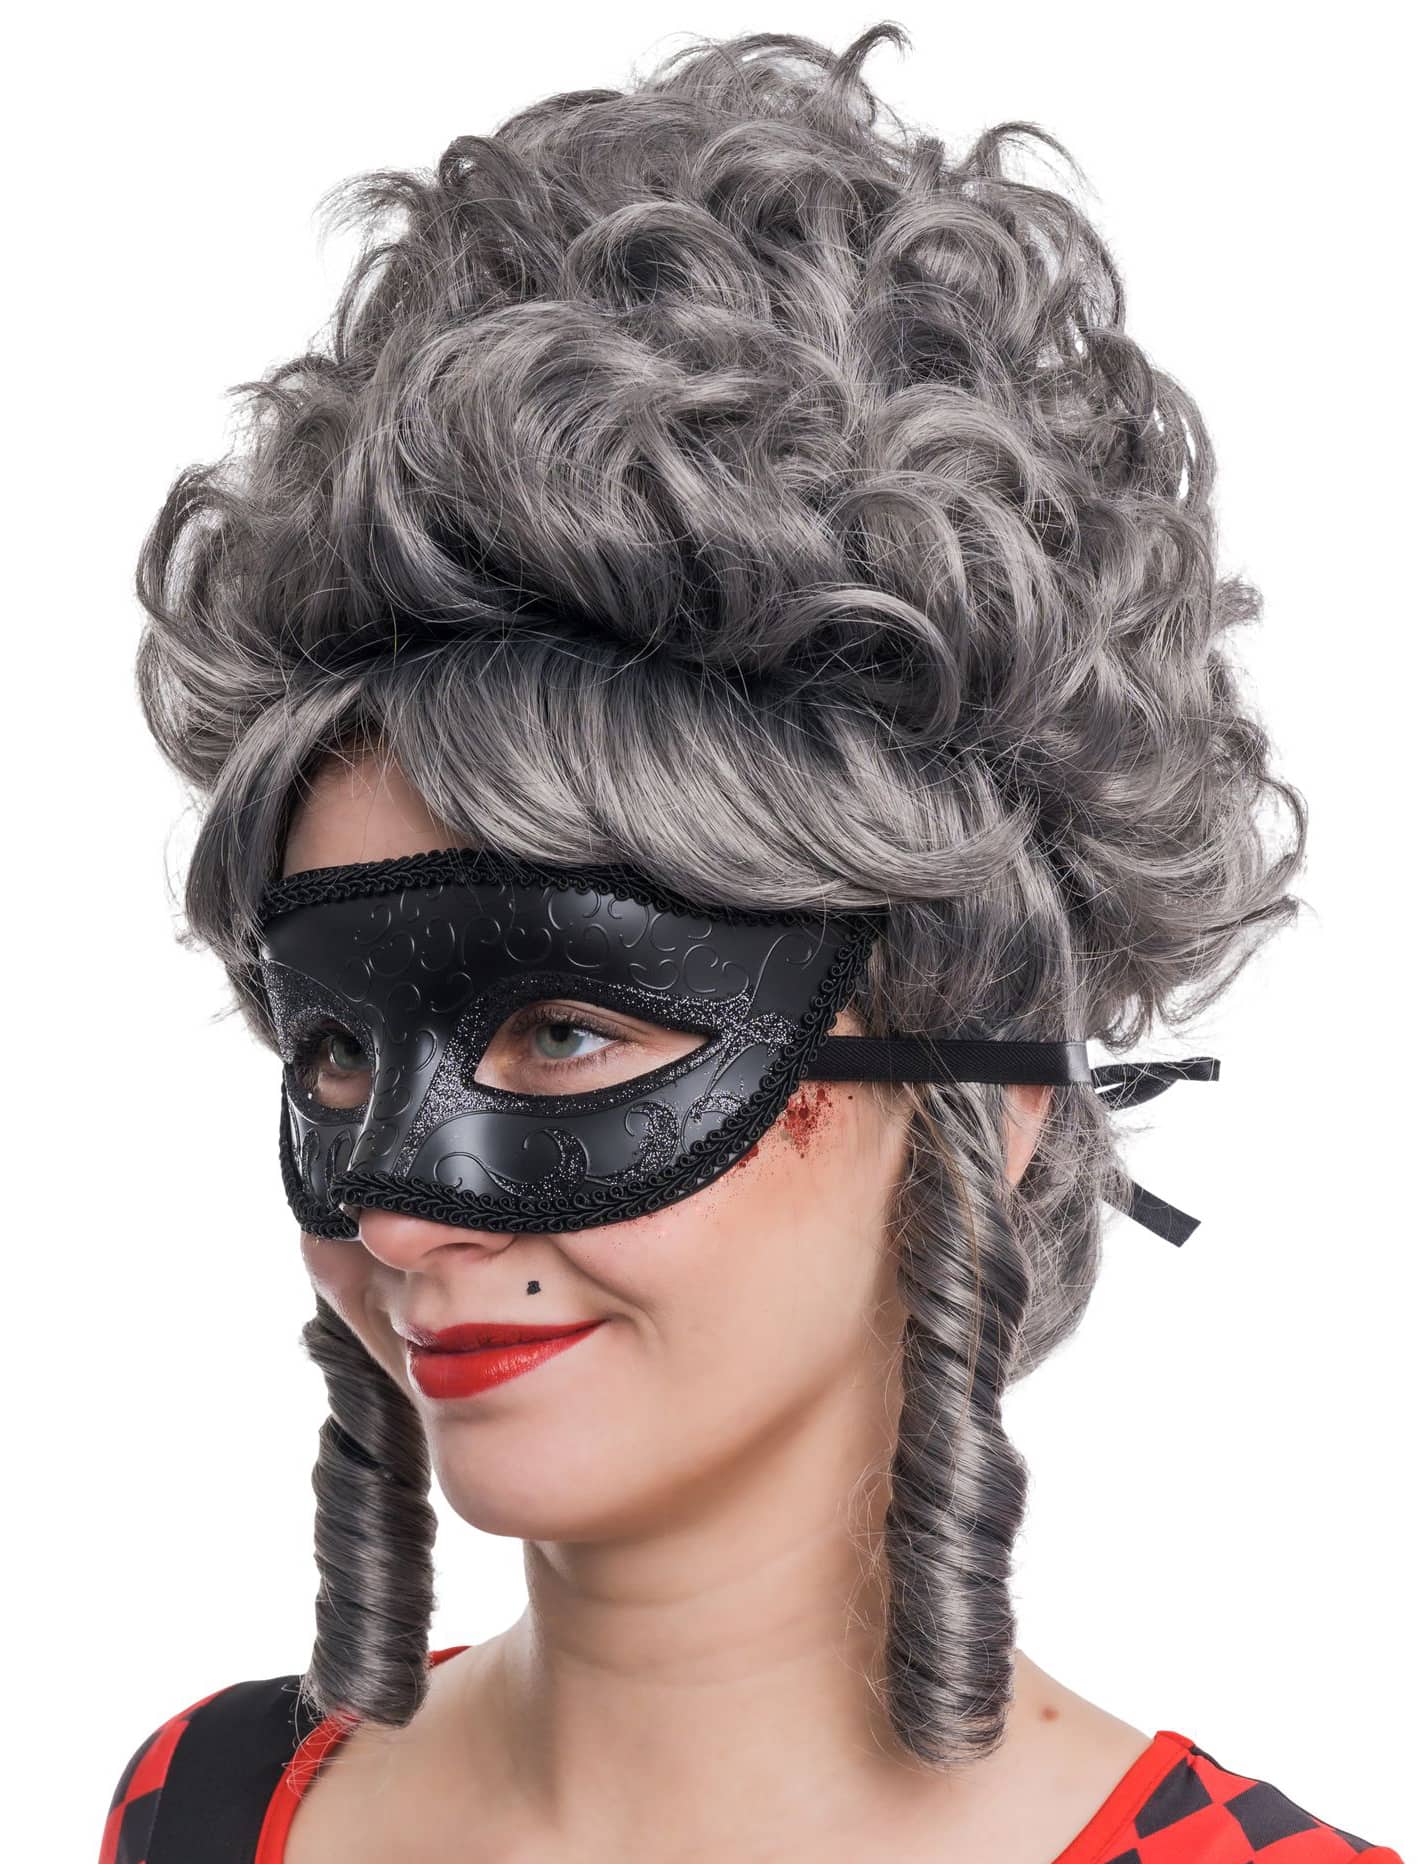 Venezianische Maske in metallic schwarz